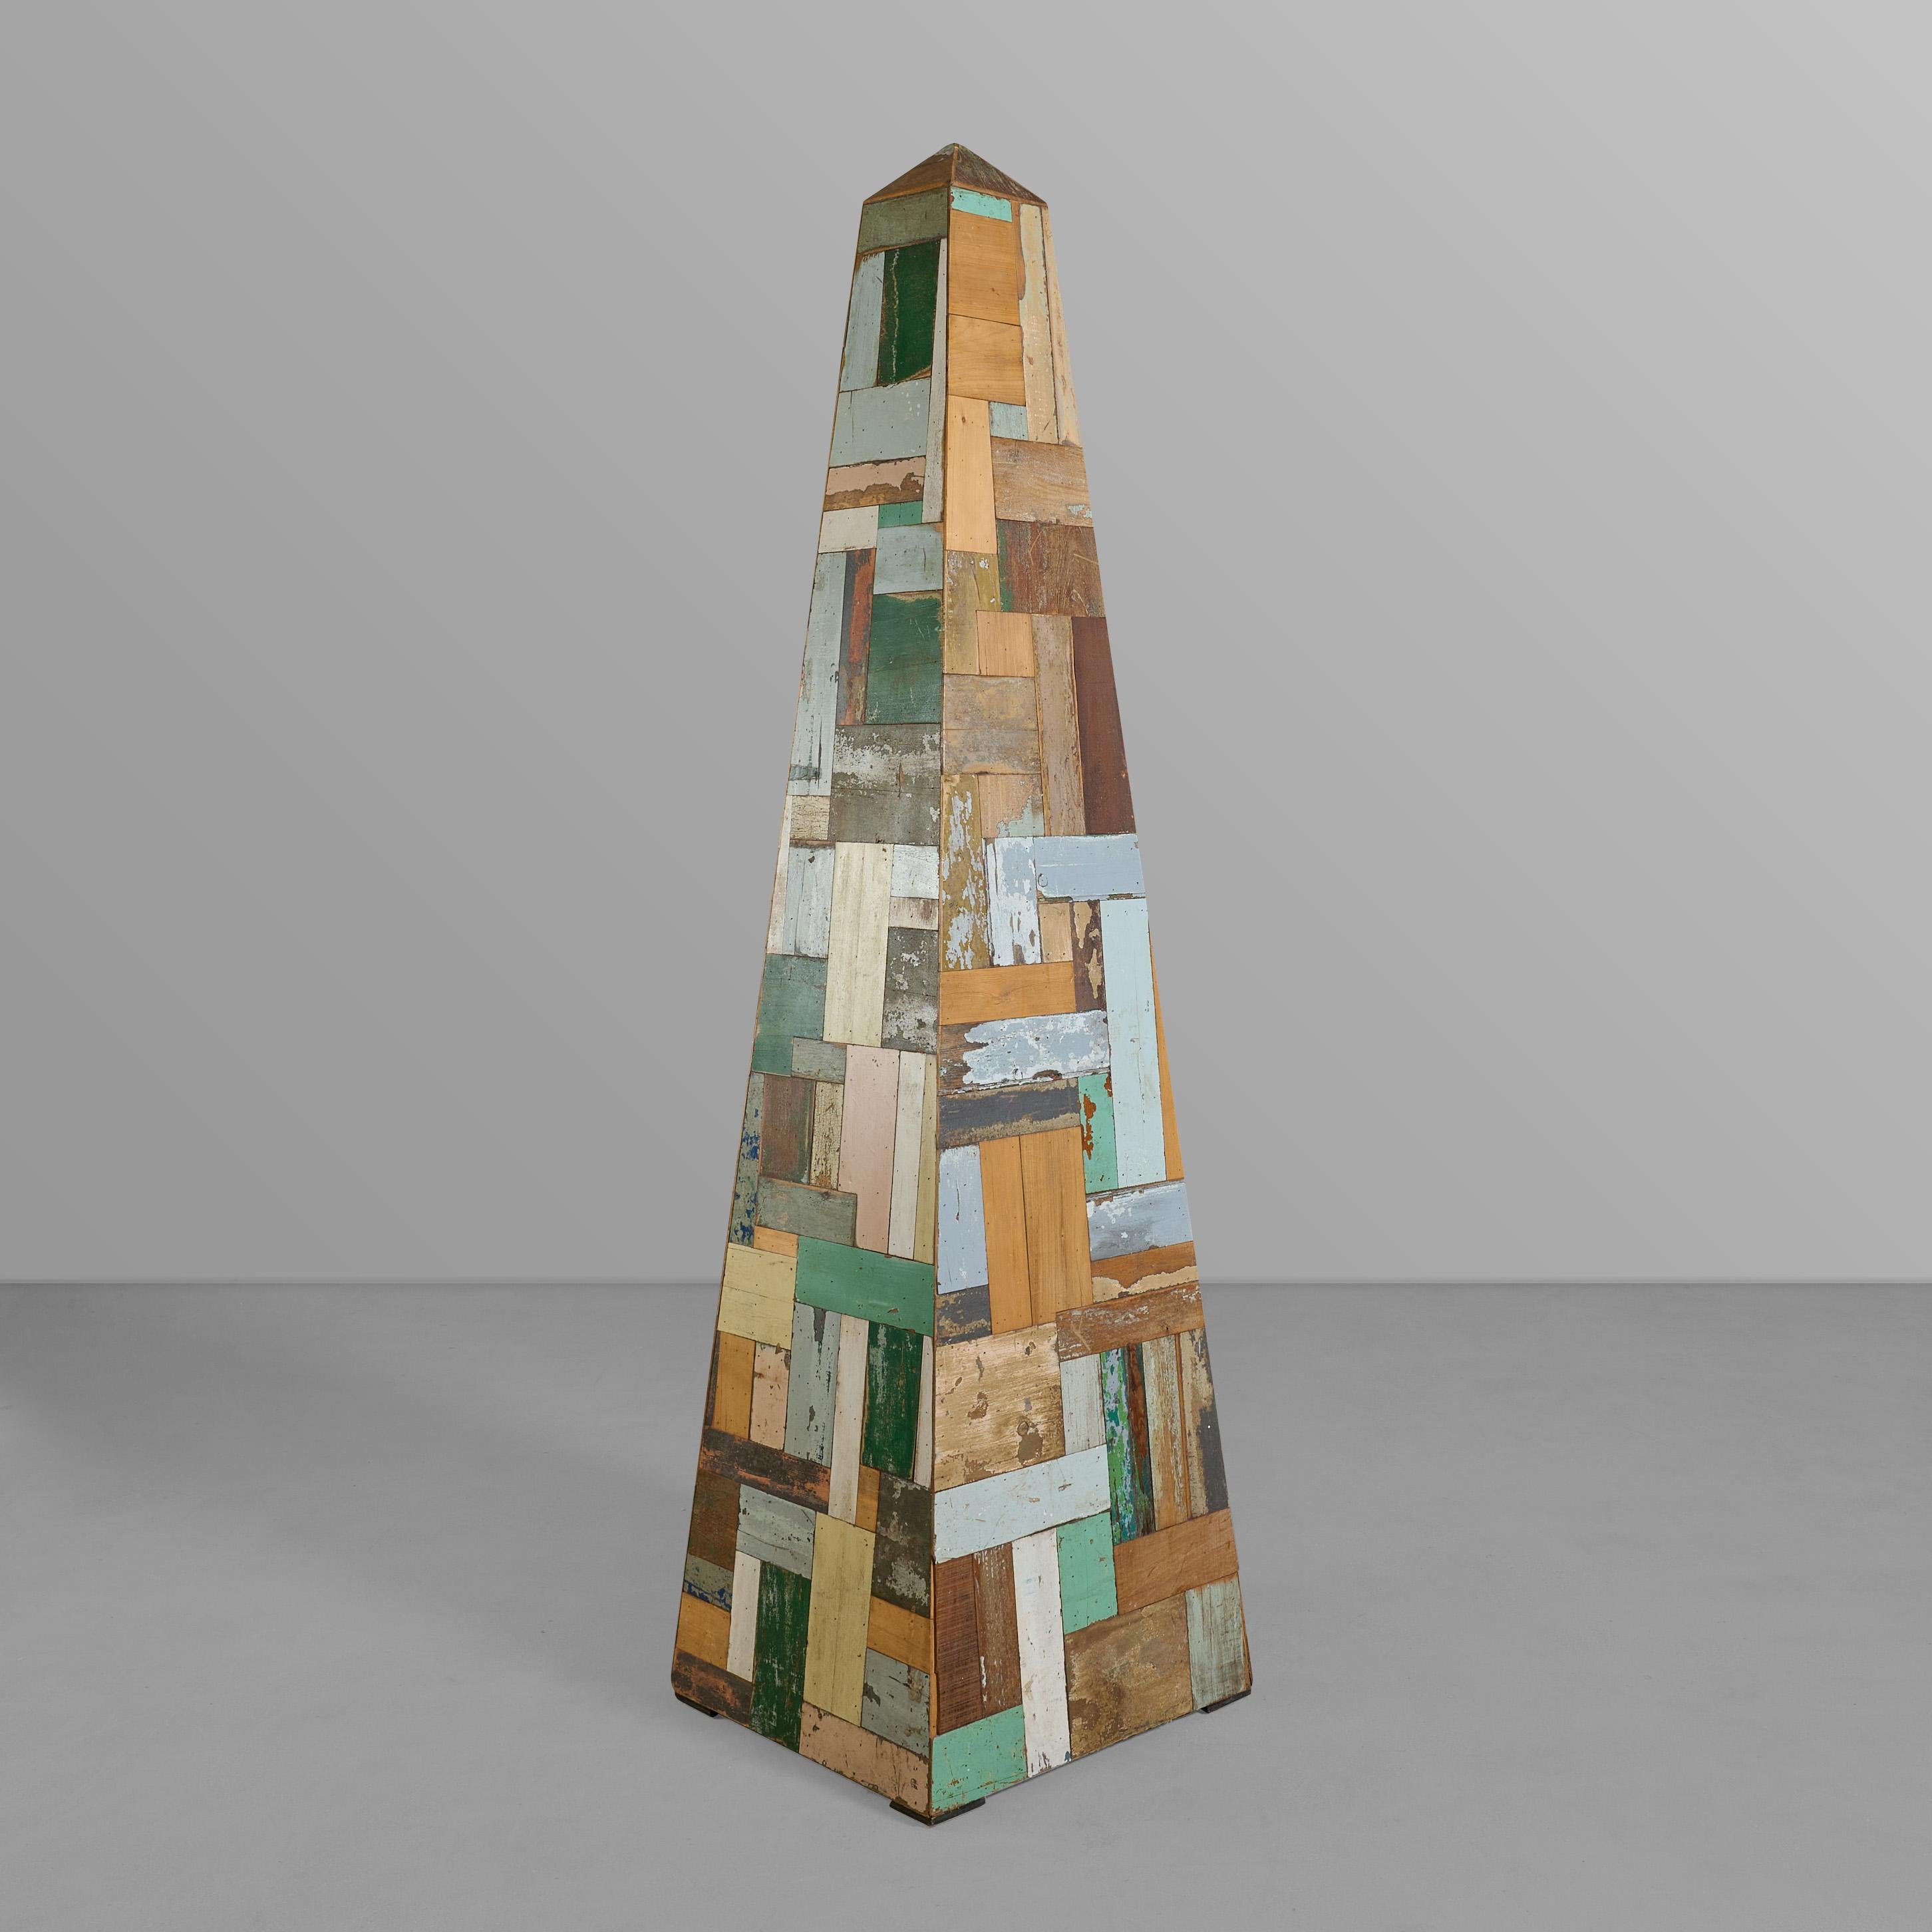 &New Konstruktion Patchwork Holz Obelisk von einem Hersteller in Argentinien.

